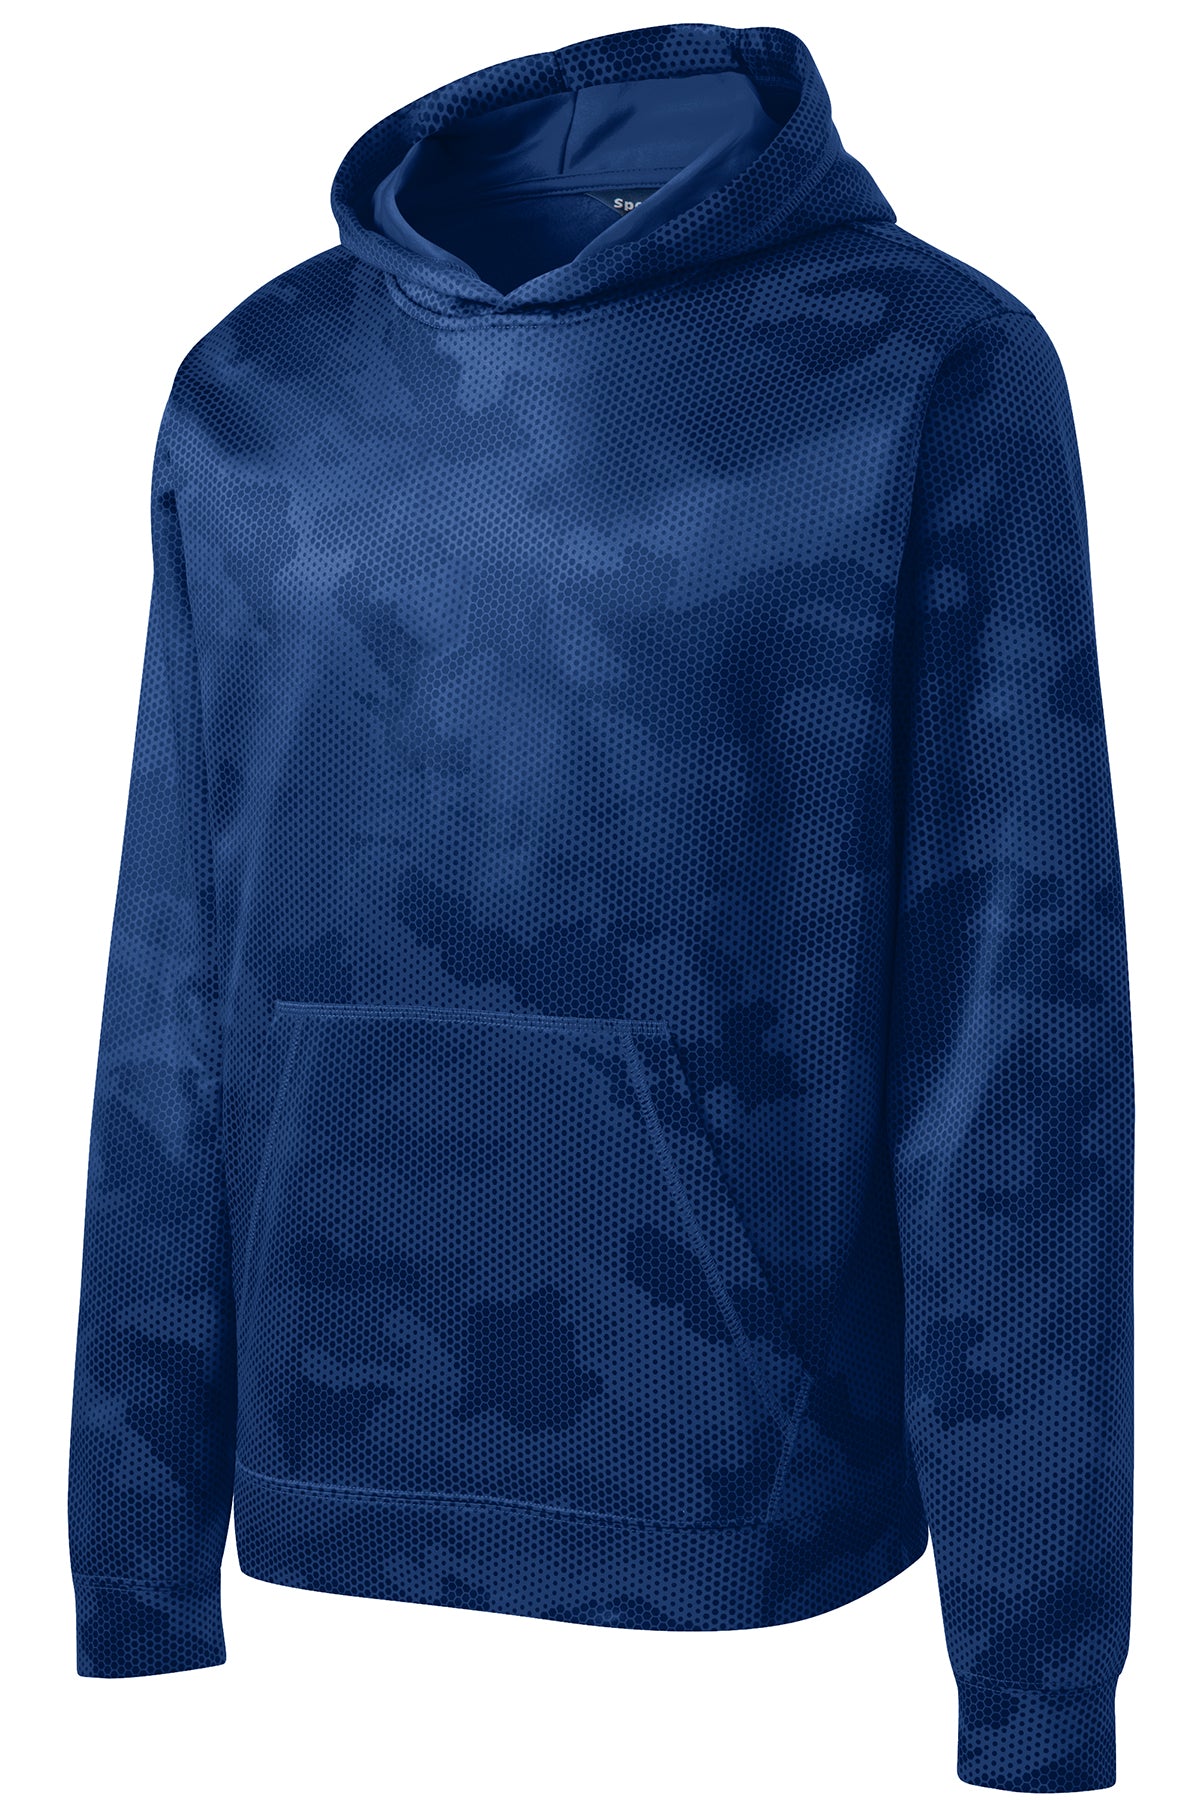 Sport-Tek® Youth Sport-Wick® CamoHex Fleece Hooded Pullover